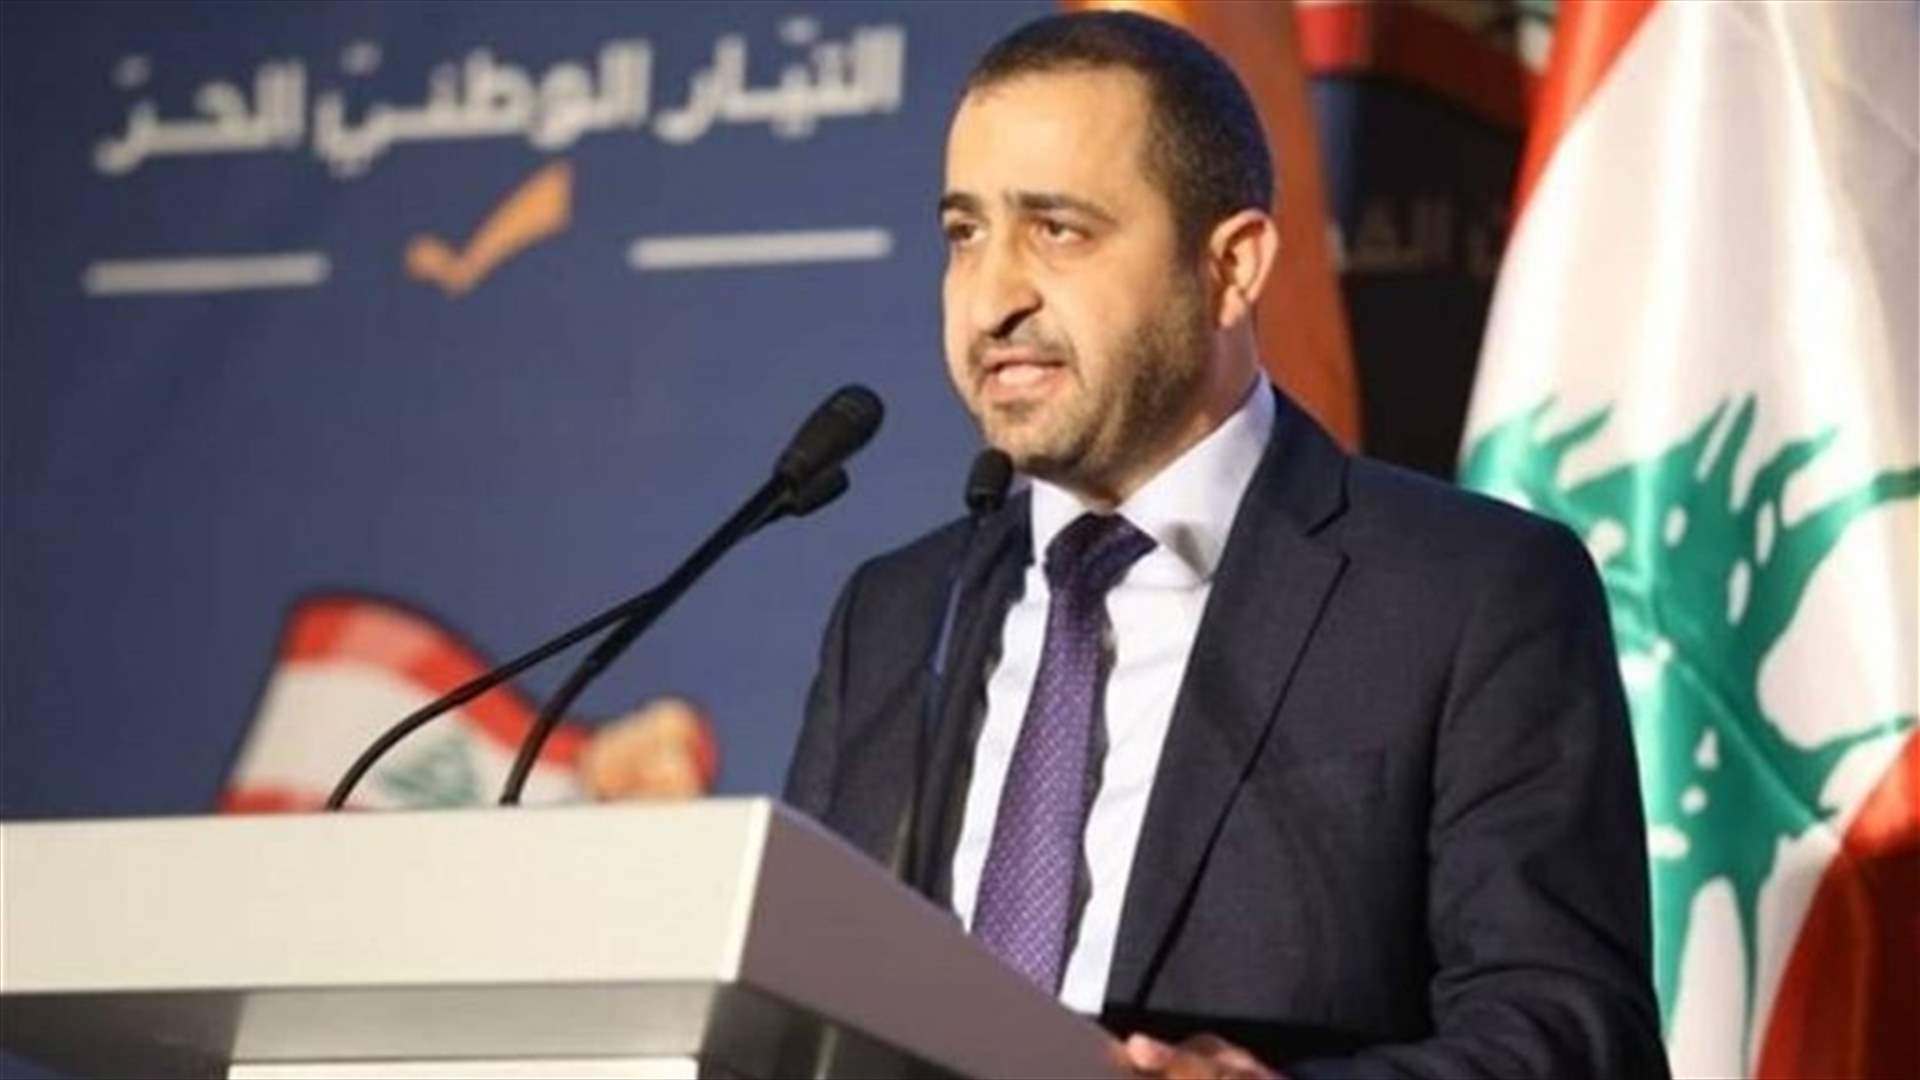 غسان عطالله: طلبت من القاضية غادة عون عدم توقيف أي ناشط رغم تعرّضي للاعتداء